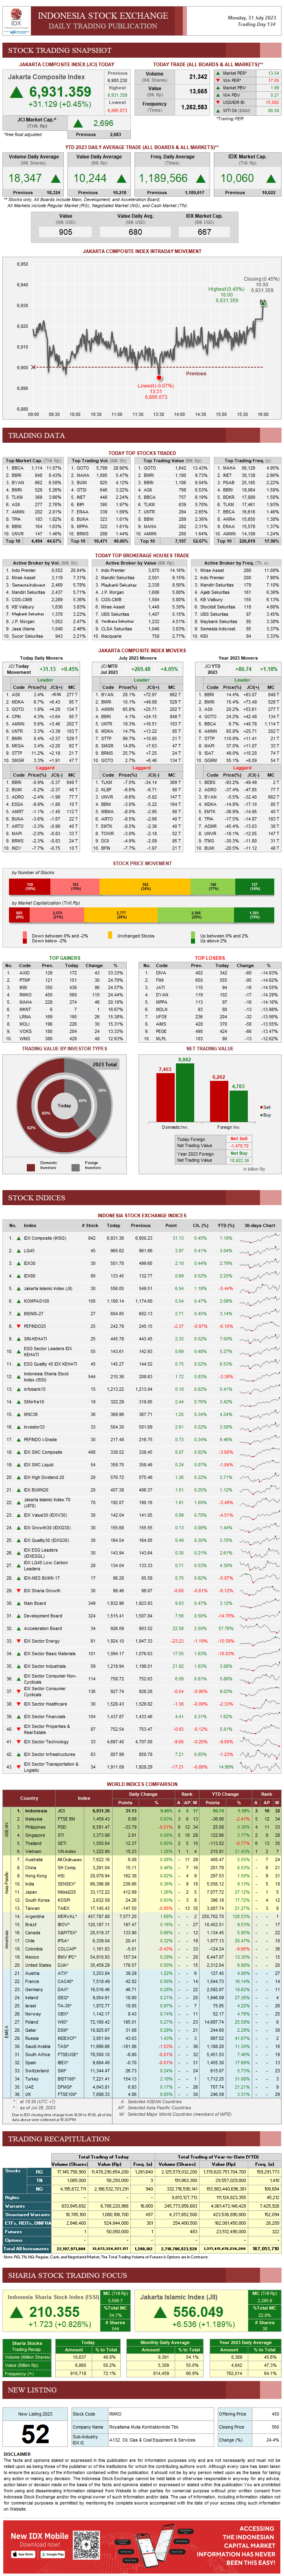 statistik perdagangan saham, Berikut adalah ringkasan perdagangan saham di Bursa Efek Indonesia (Indonesia Stock Exchange/IDX) dan beberapa indeks global dari beberapa negara. 